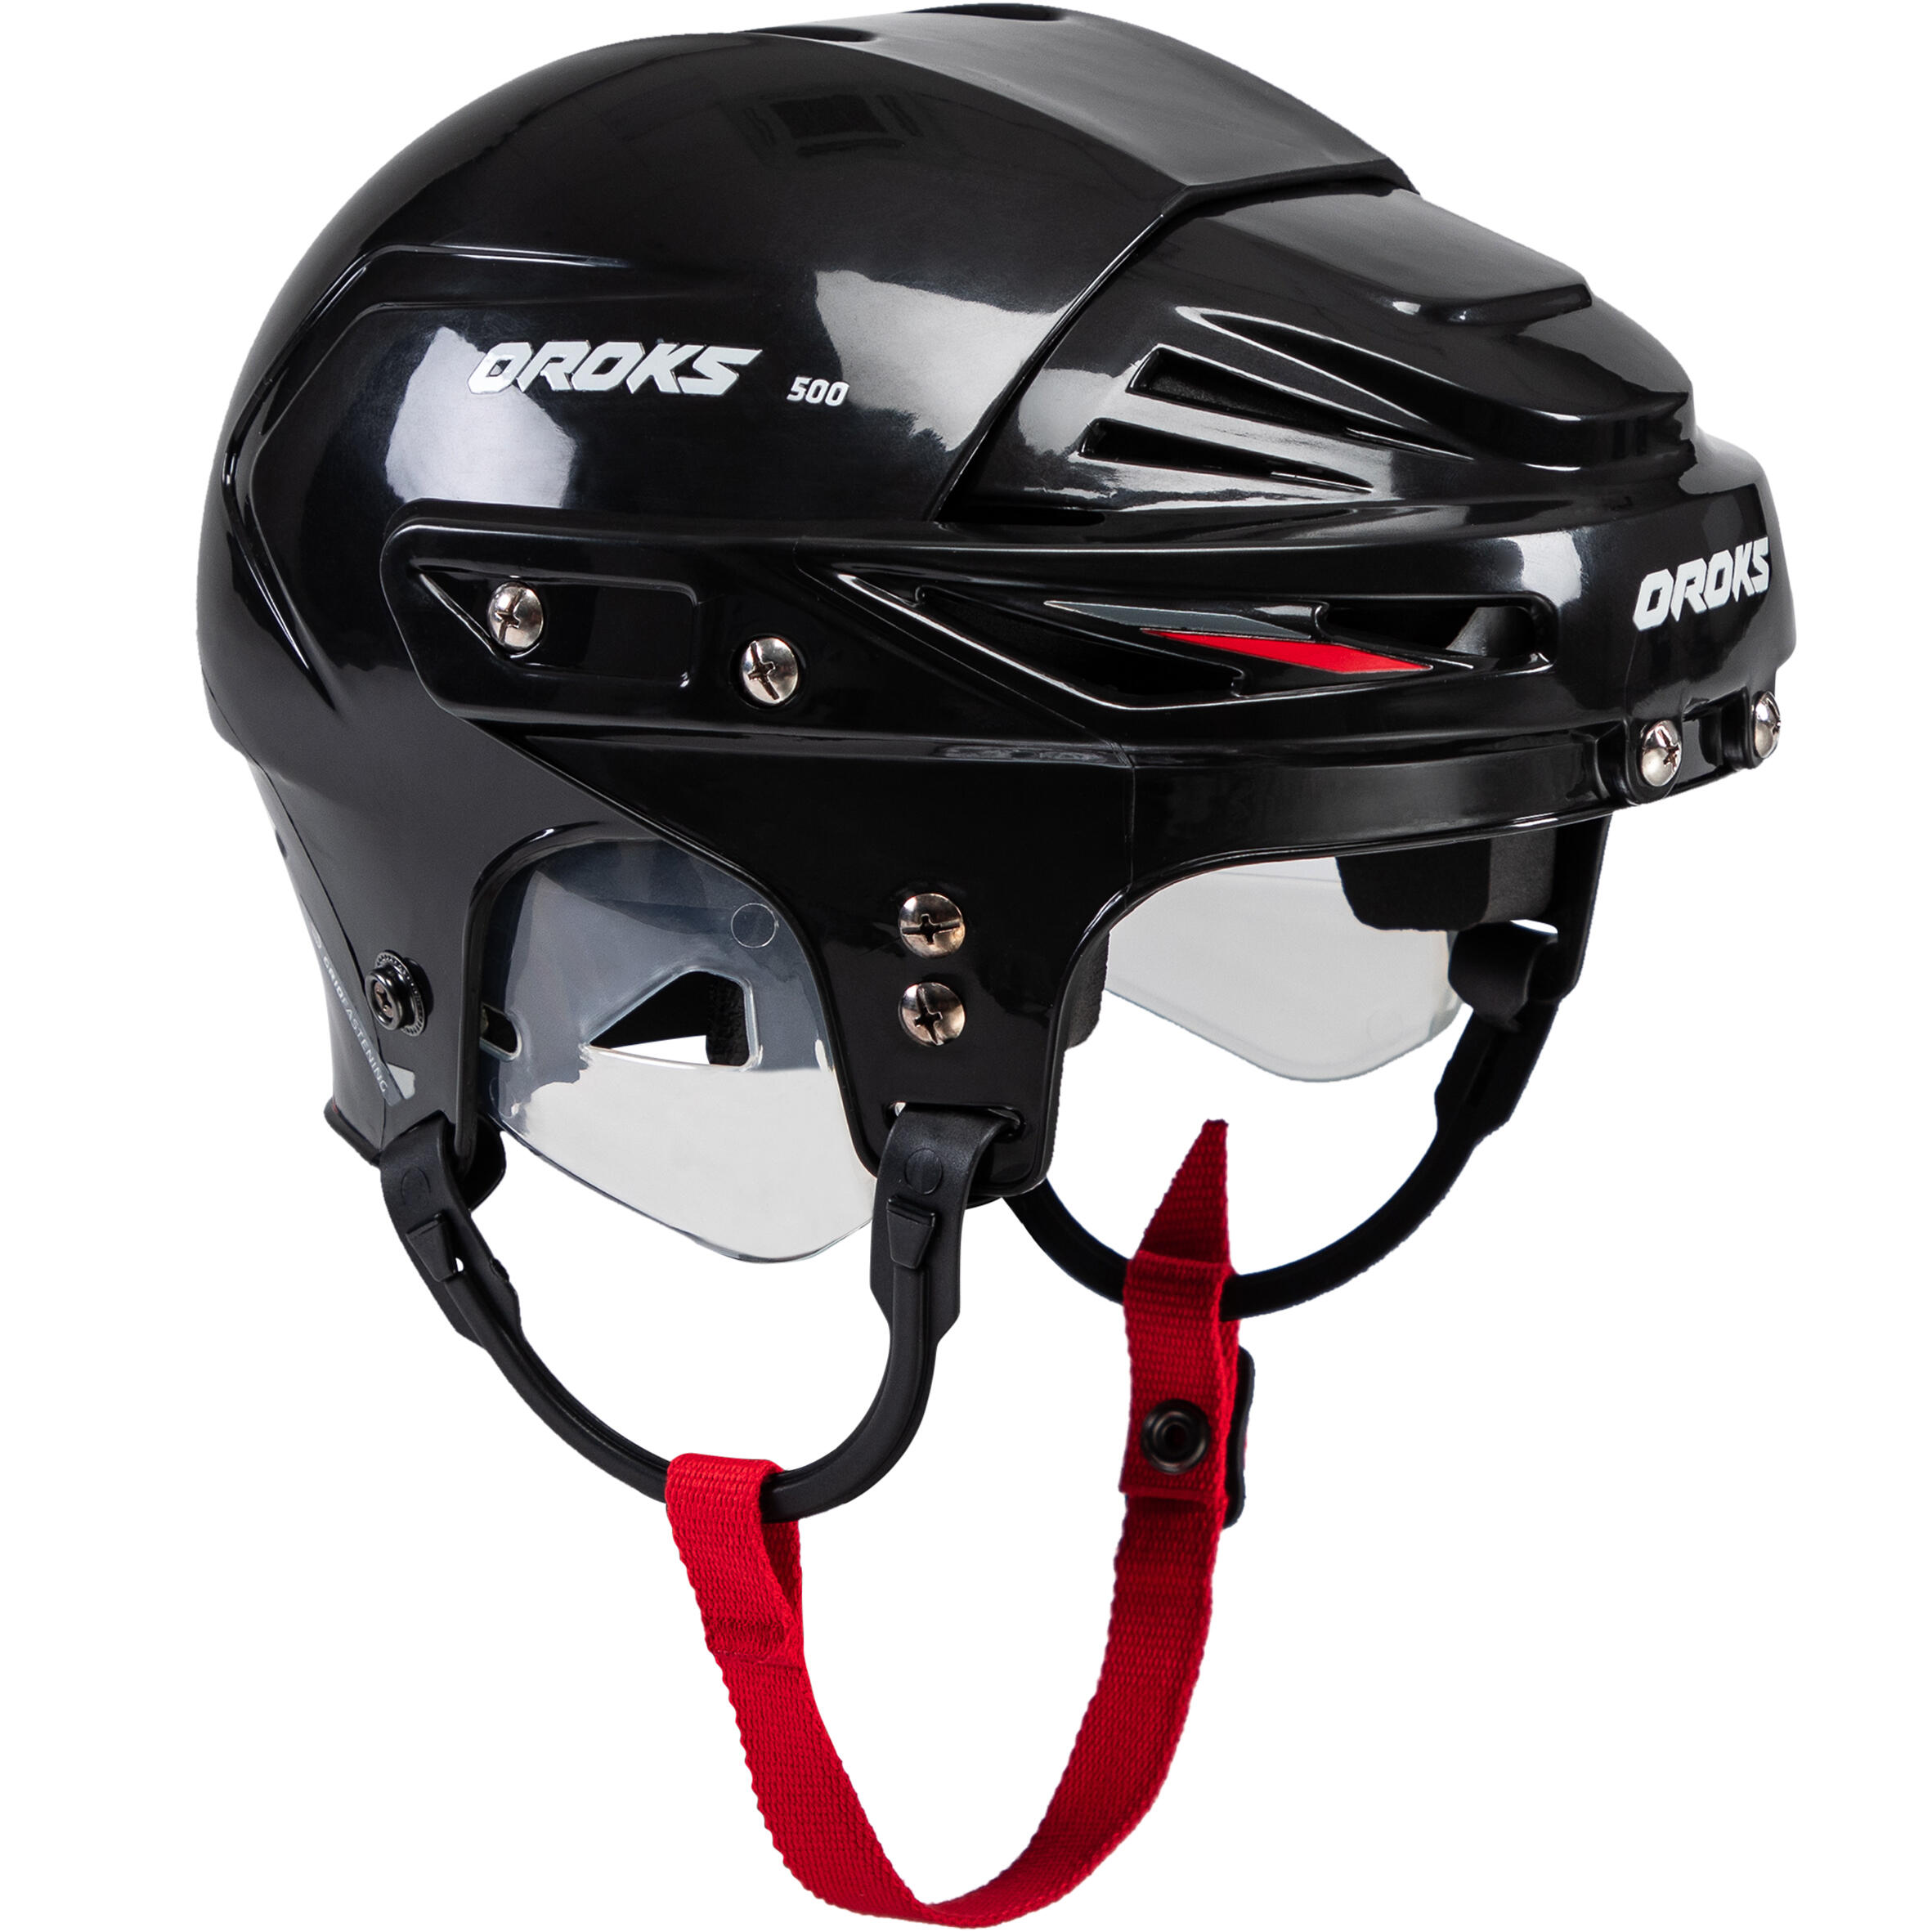 IH500 JR Hockey Helmet - Black 1/6